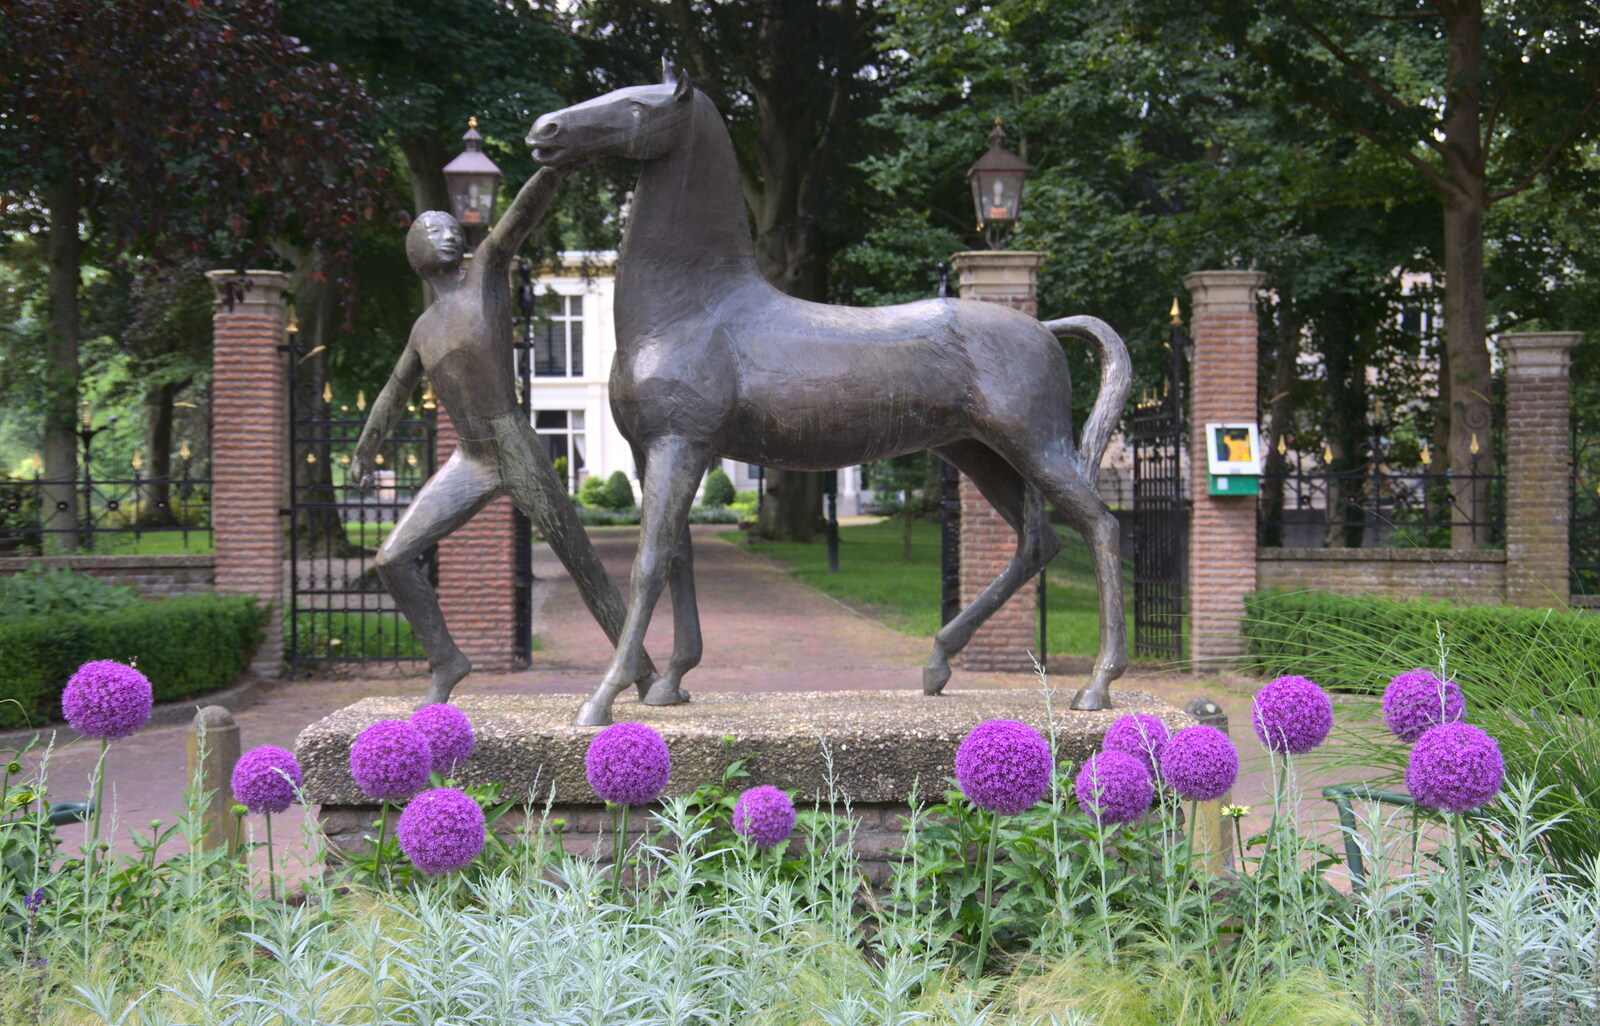 A statue of a horse, opposite the Hervormde Kerk from A Postcard From Asperen, Gelderland, Netherlands - 9th June 2018